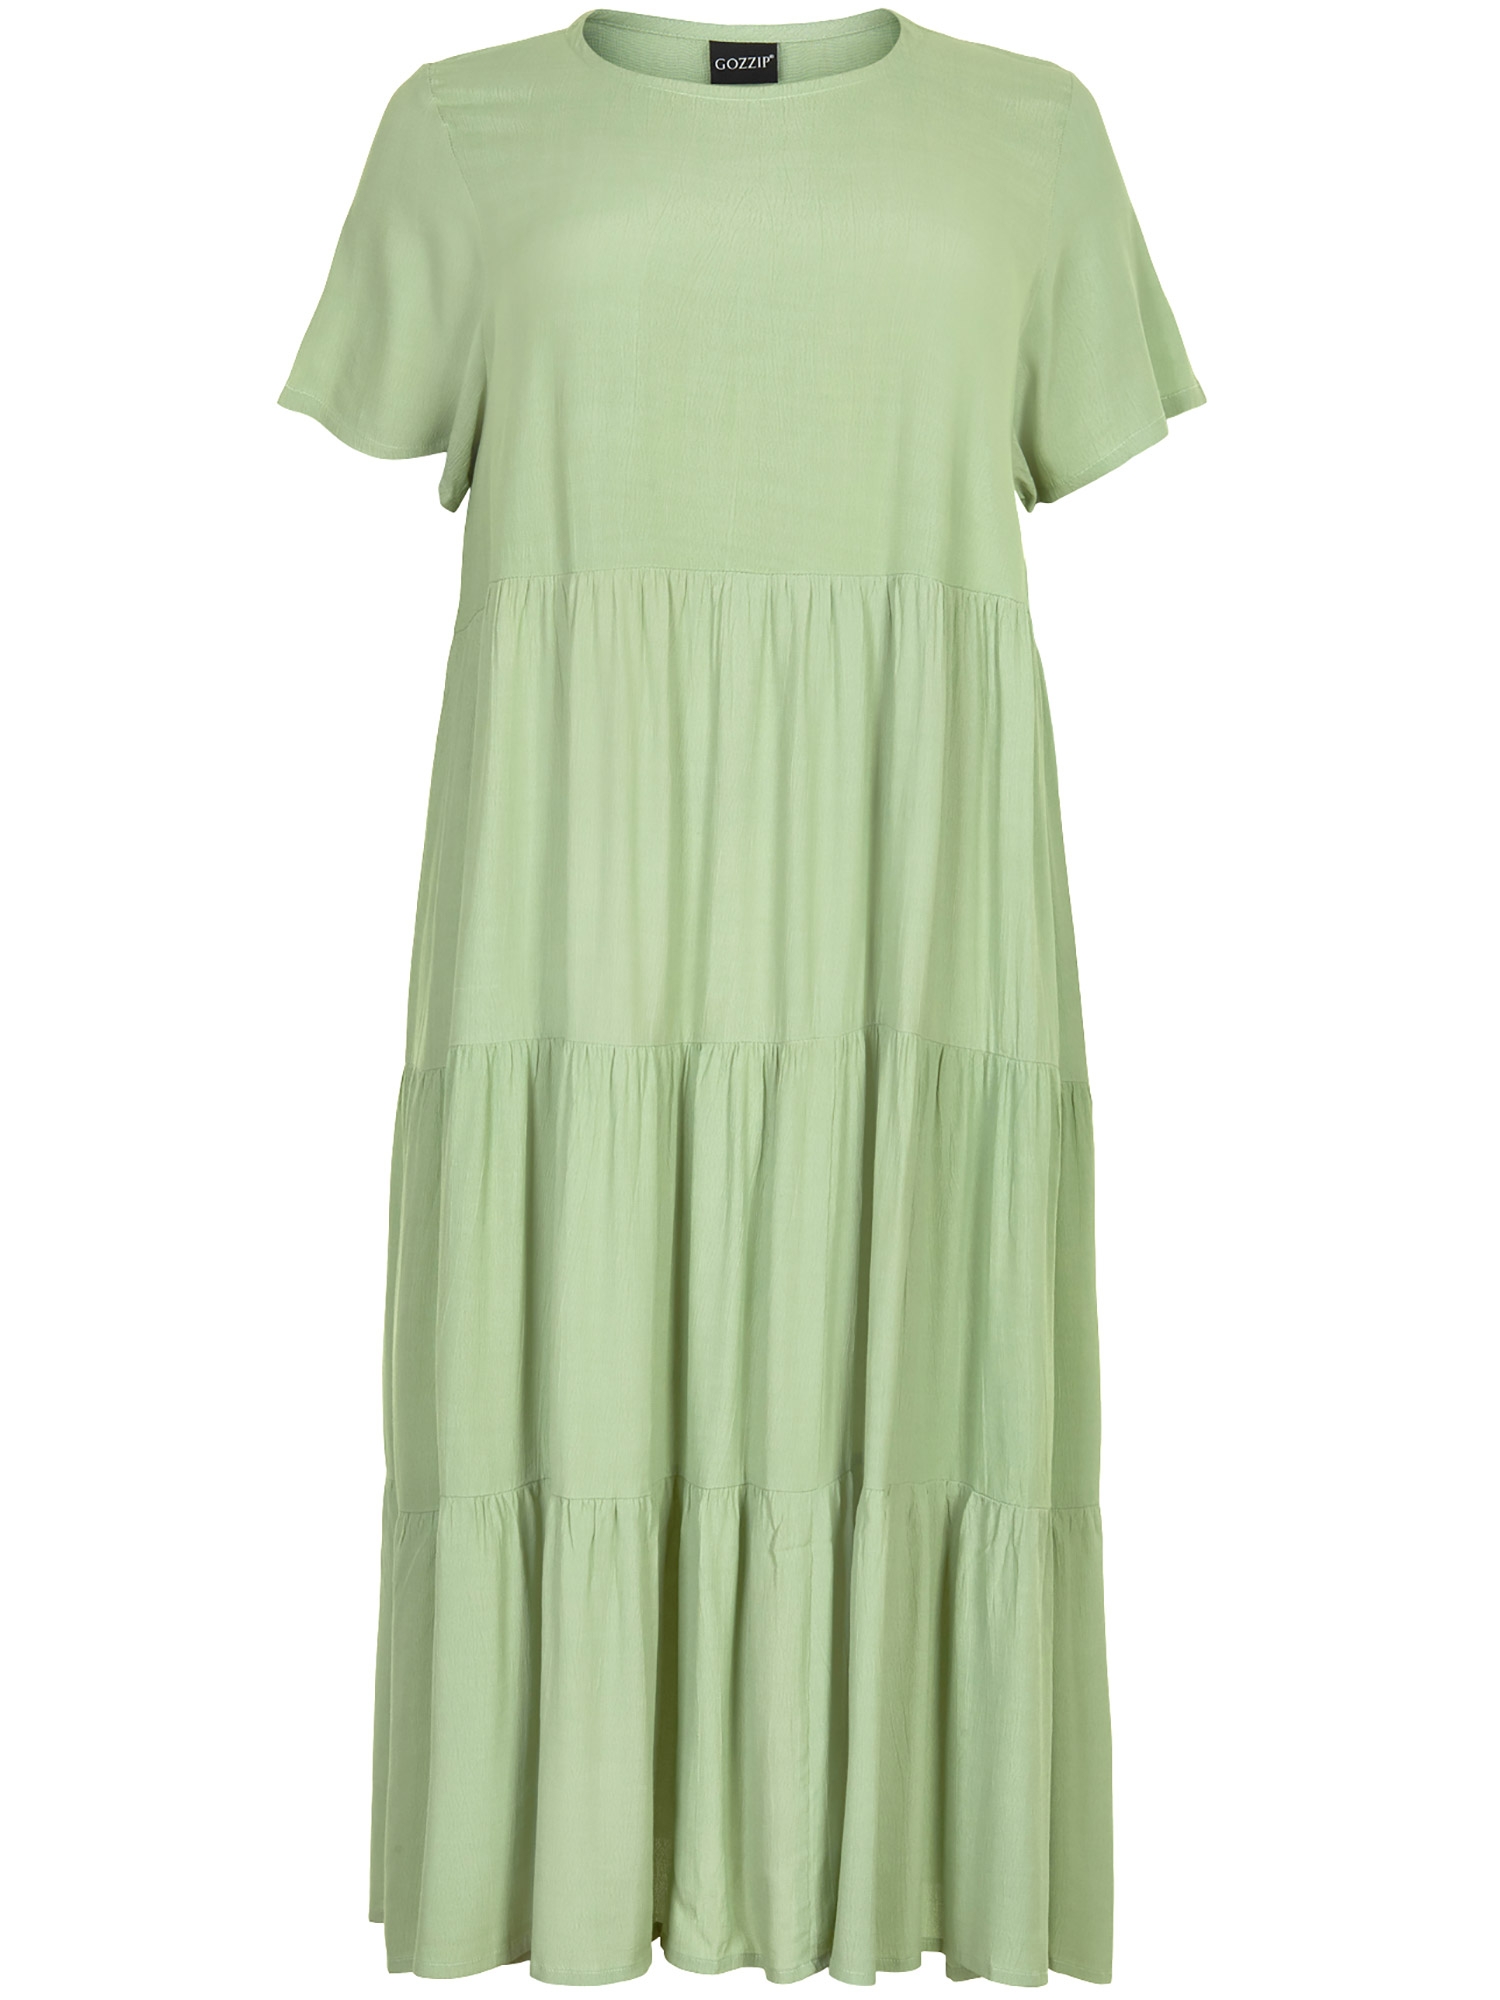 Sussie - lang kjole i lys grønn viskose med volang fra Gozzip